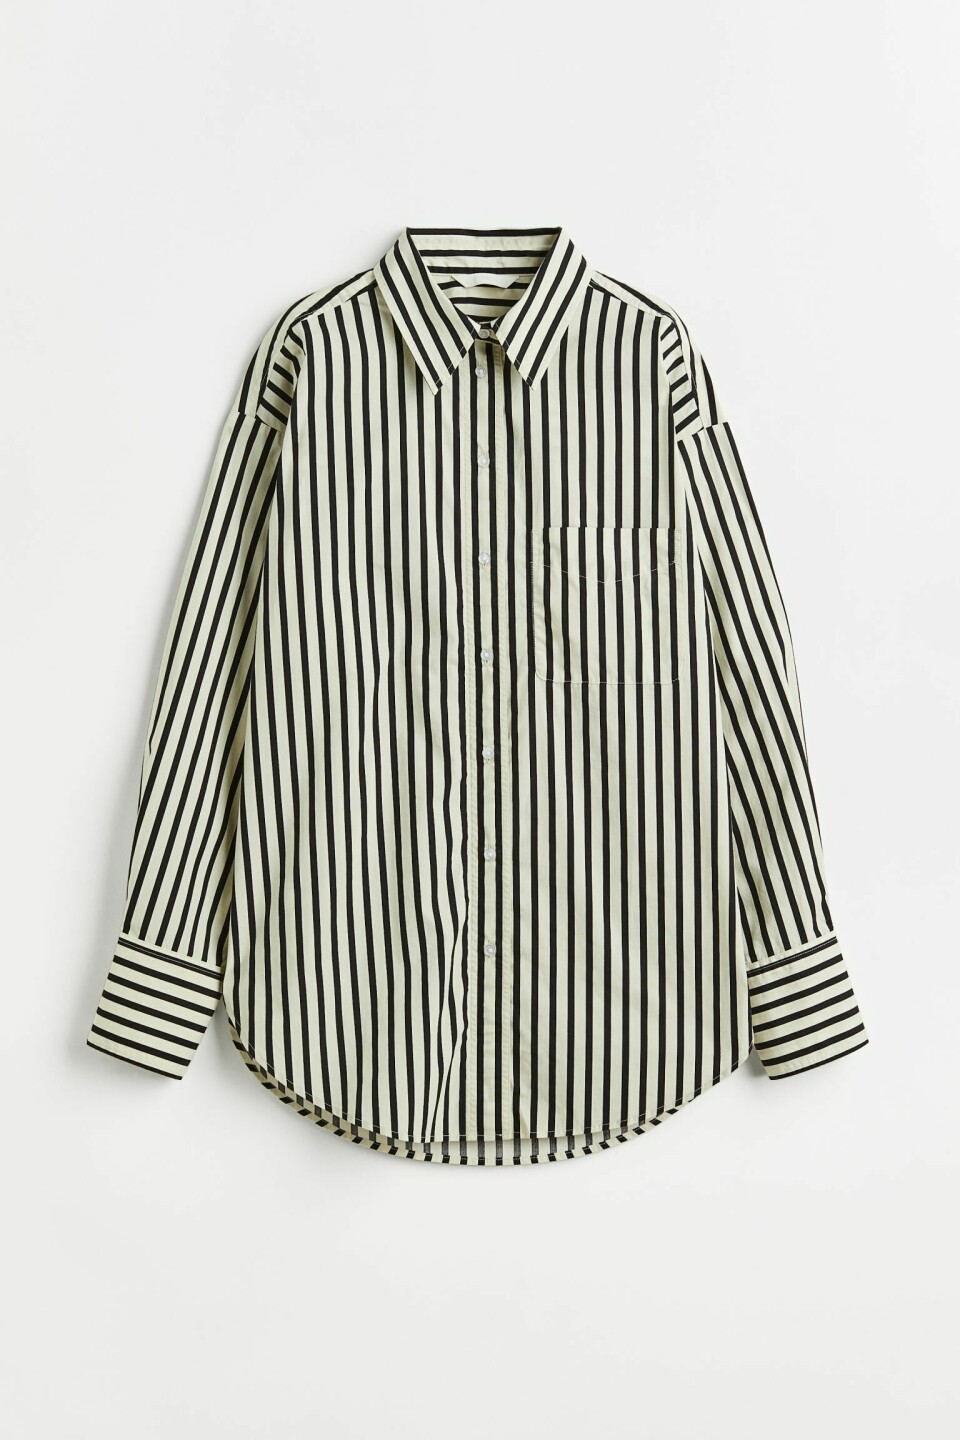 Skjorte med striper fra H&M, 199,- (annonse)

Brun skjorte fra Arket, 590,- (annonse)
Brunt er en av sesongens hotteste farger – også for interiøret.

Stripete skjorte fra HOPE, 1899,- (annonse)
Det blir ikke mer klassisk enn den blå/hvite, stripete skjorta. Dette er snarveien til chic eleganse, og et av garderobens sikreste kort.

Oversized skjorte fra H&M, 249,- (annonse)

Skjorte med hundetannsmønster fra H&M, 299,- (annonse)
Hundetannsmønster passer perfekt nå som høsten er her!

Stripete skjorte fra Arket, 690,- (annonse)
Vi får aldri nok av striper...

Skjorte fra Isabel Marant Etoile, 2869,- på salg (annonse)

Stripete skjorte fra H&M, 399,- (annonse)
Lilla er superfint mot alle høstens farger, som brunt, kamel og beige. 

Skinnskjorte fra H&M, 2999,- (annonse)
To favoritter i ett og samme plagg: Oversized skjorte og skjortejakka! Denne kan brukes lag-på-lag med deilig kasjmir og pologenser gjennom hele høsten og vinteren.